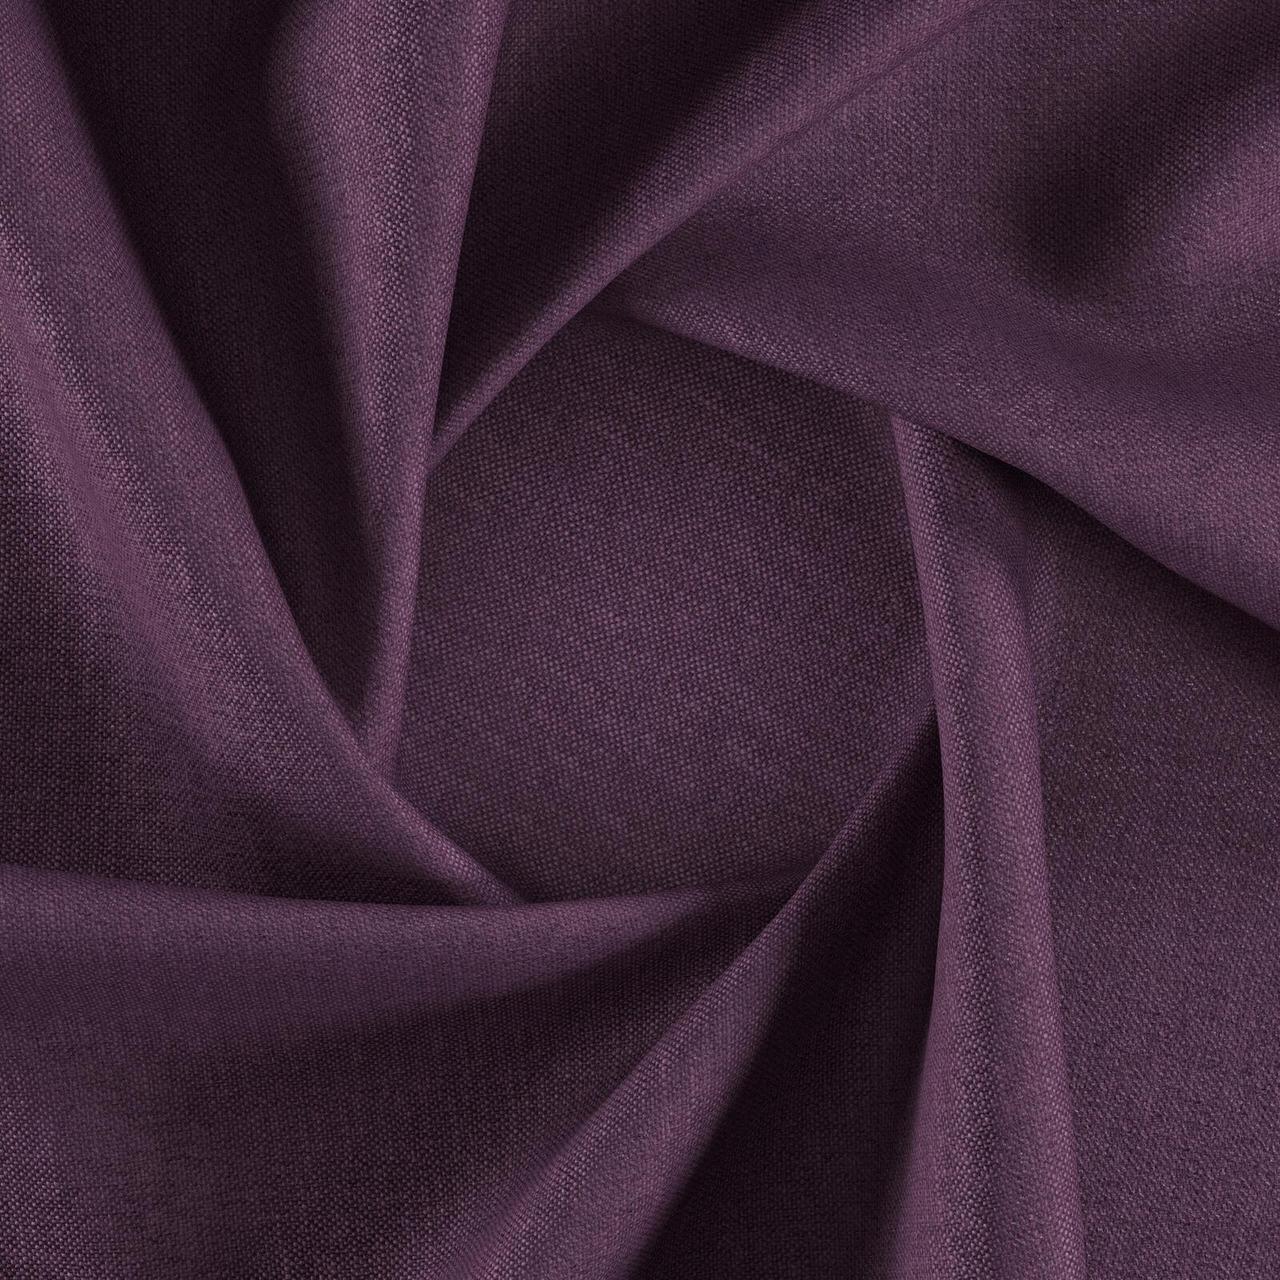 Тканина для перетяжки м'яких меблів шеніл Перфекто (Perfecto) фіолетового кольору